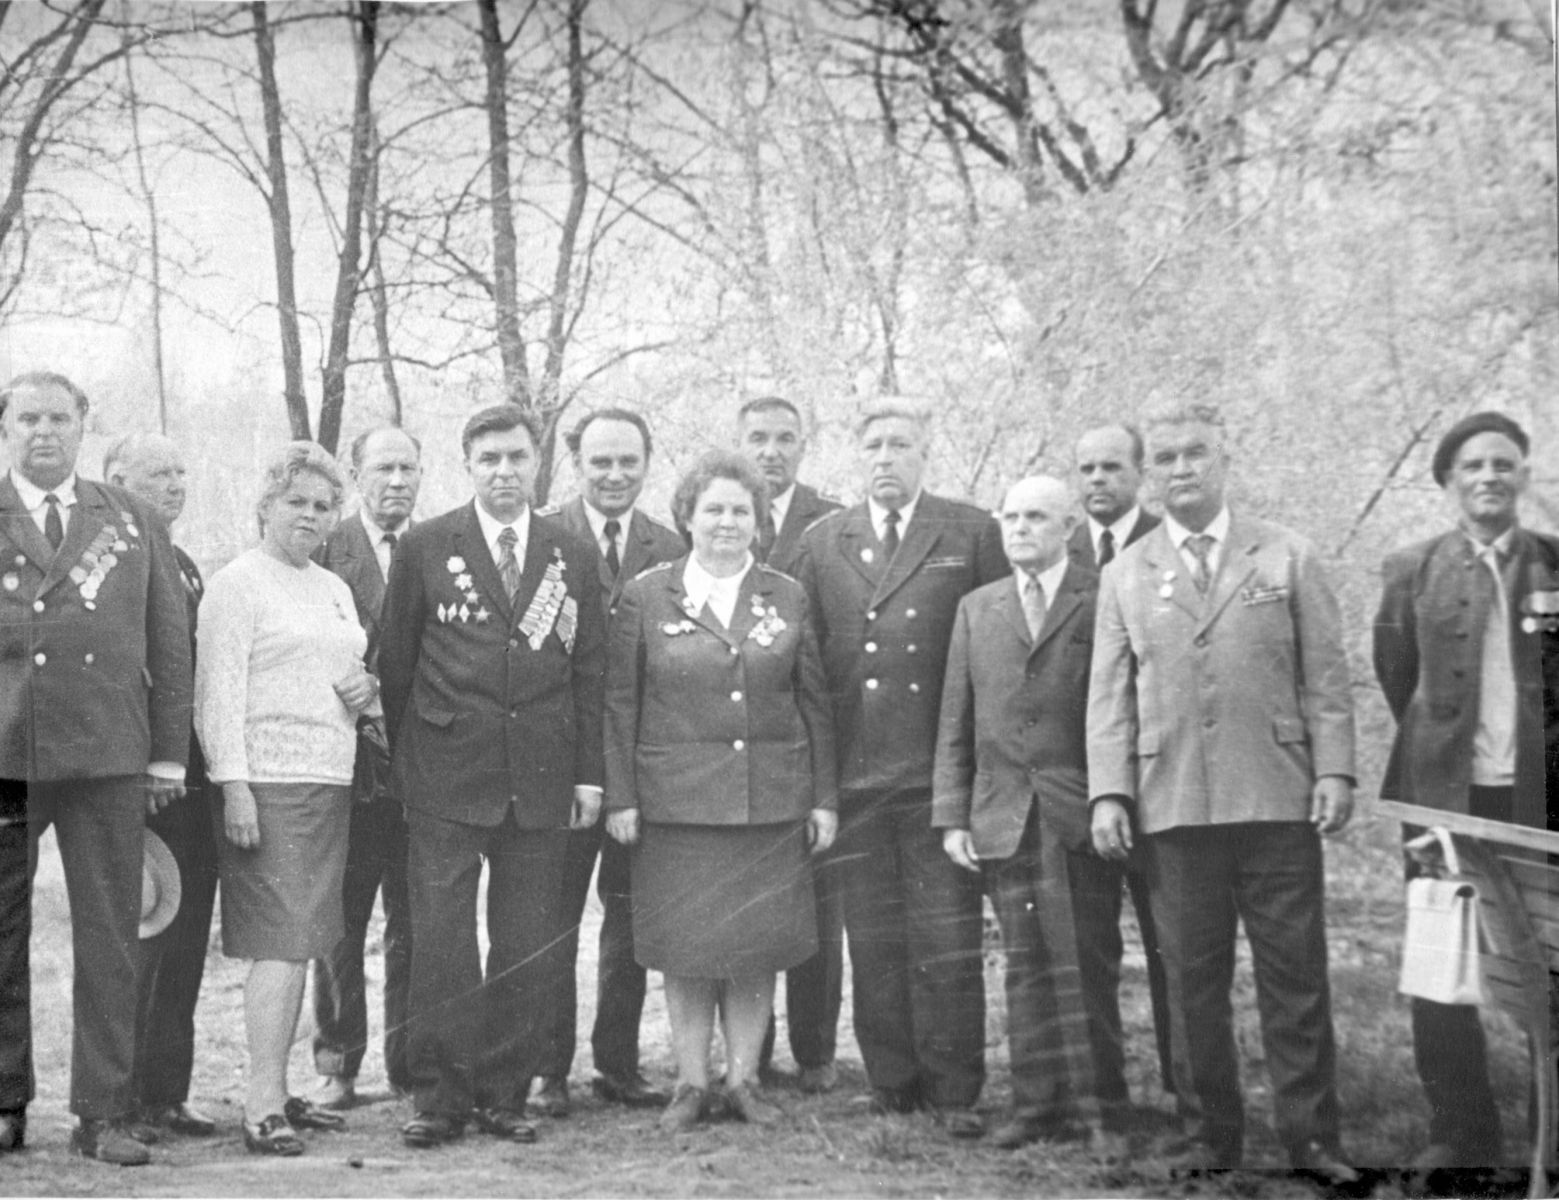 Дрыгин В.М. (5-й слева) и Памятных Т.У. (седьмая слева) с ветеранами ВОВ - работниками РОАО, 70-е годы.